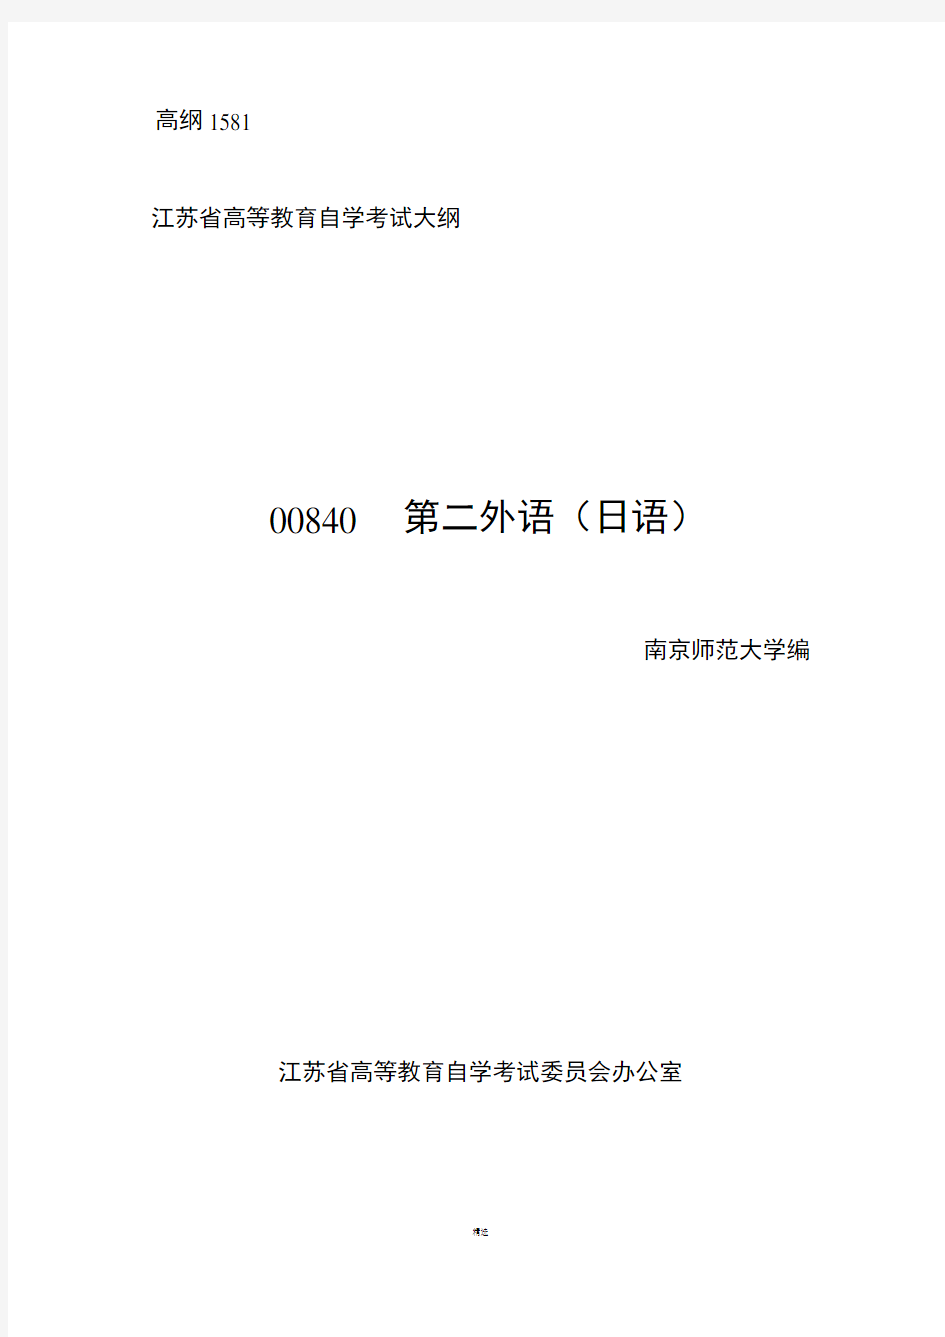 自考大纲 00840  第二外语(日语)